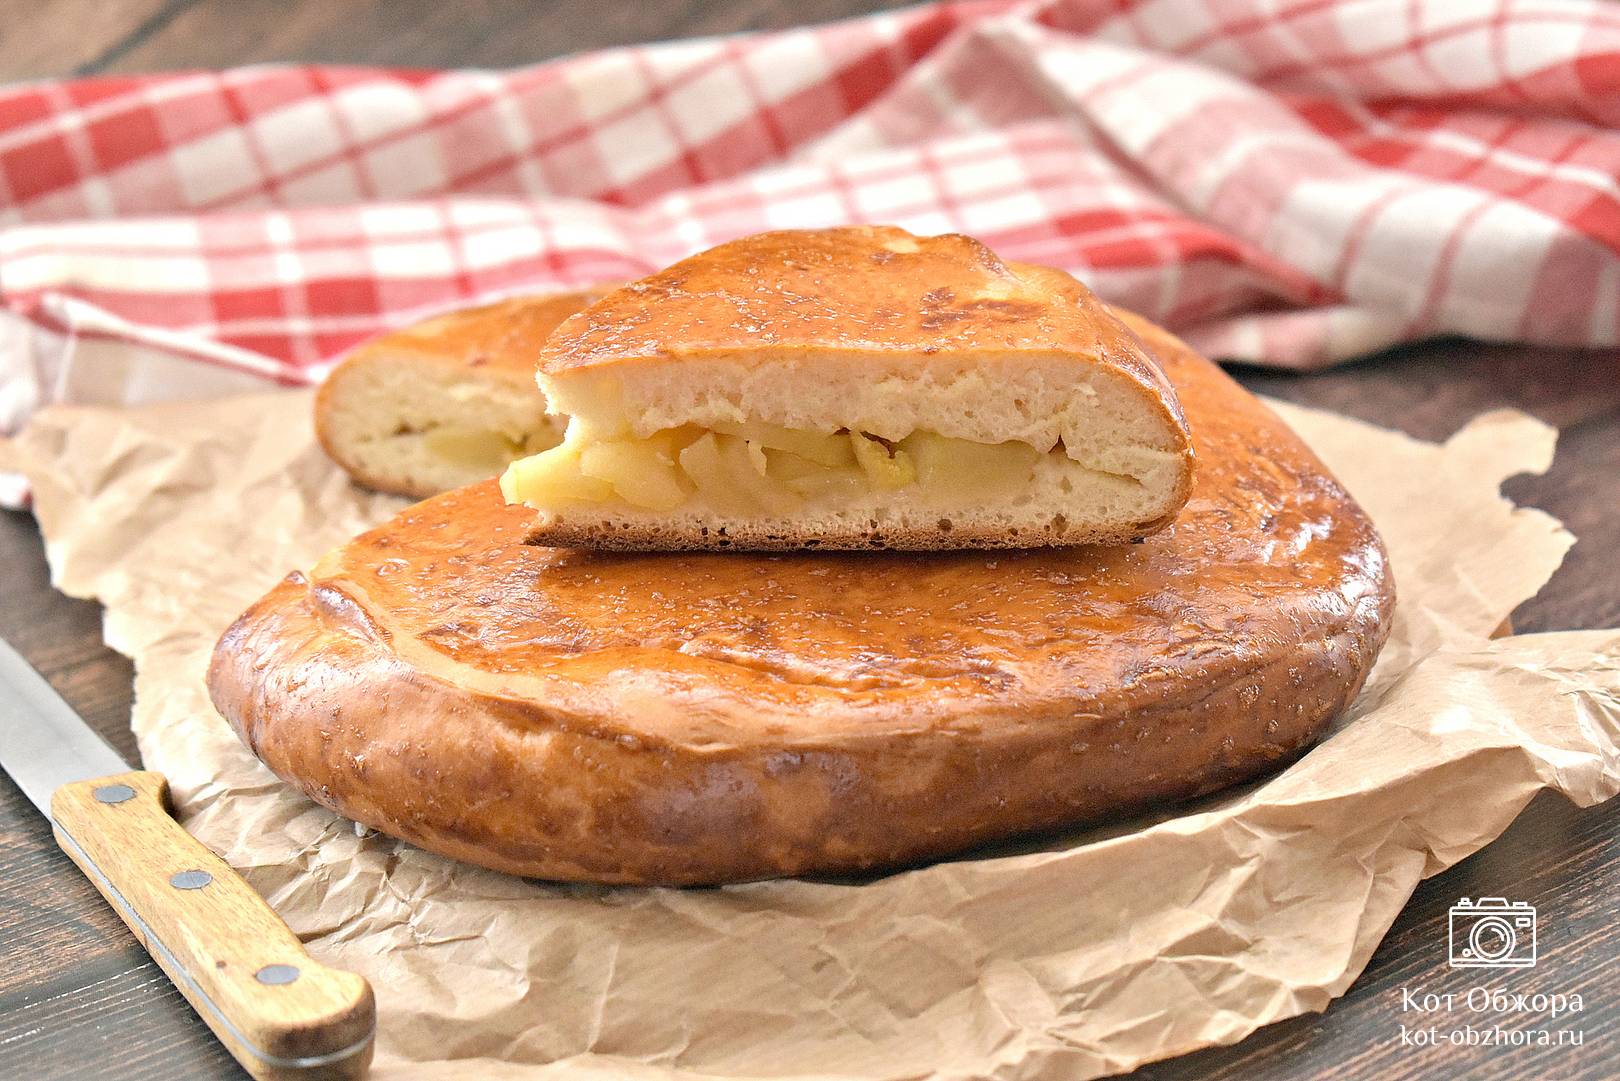 Яблочный пирог из дрожжевого теста, рецепт с фото пошагово в духовке | Простые рецепты с фото